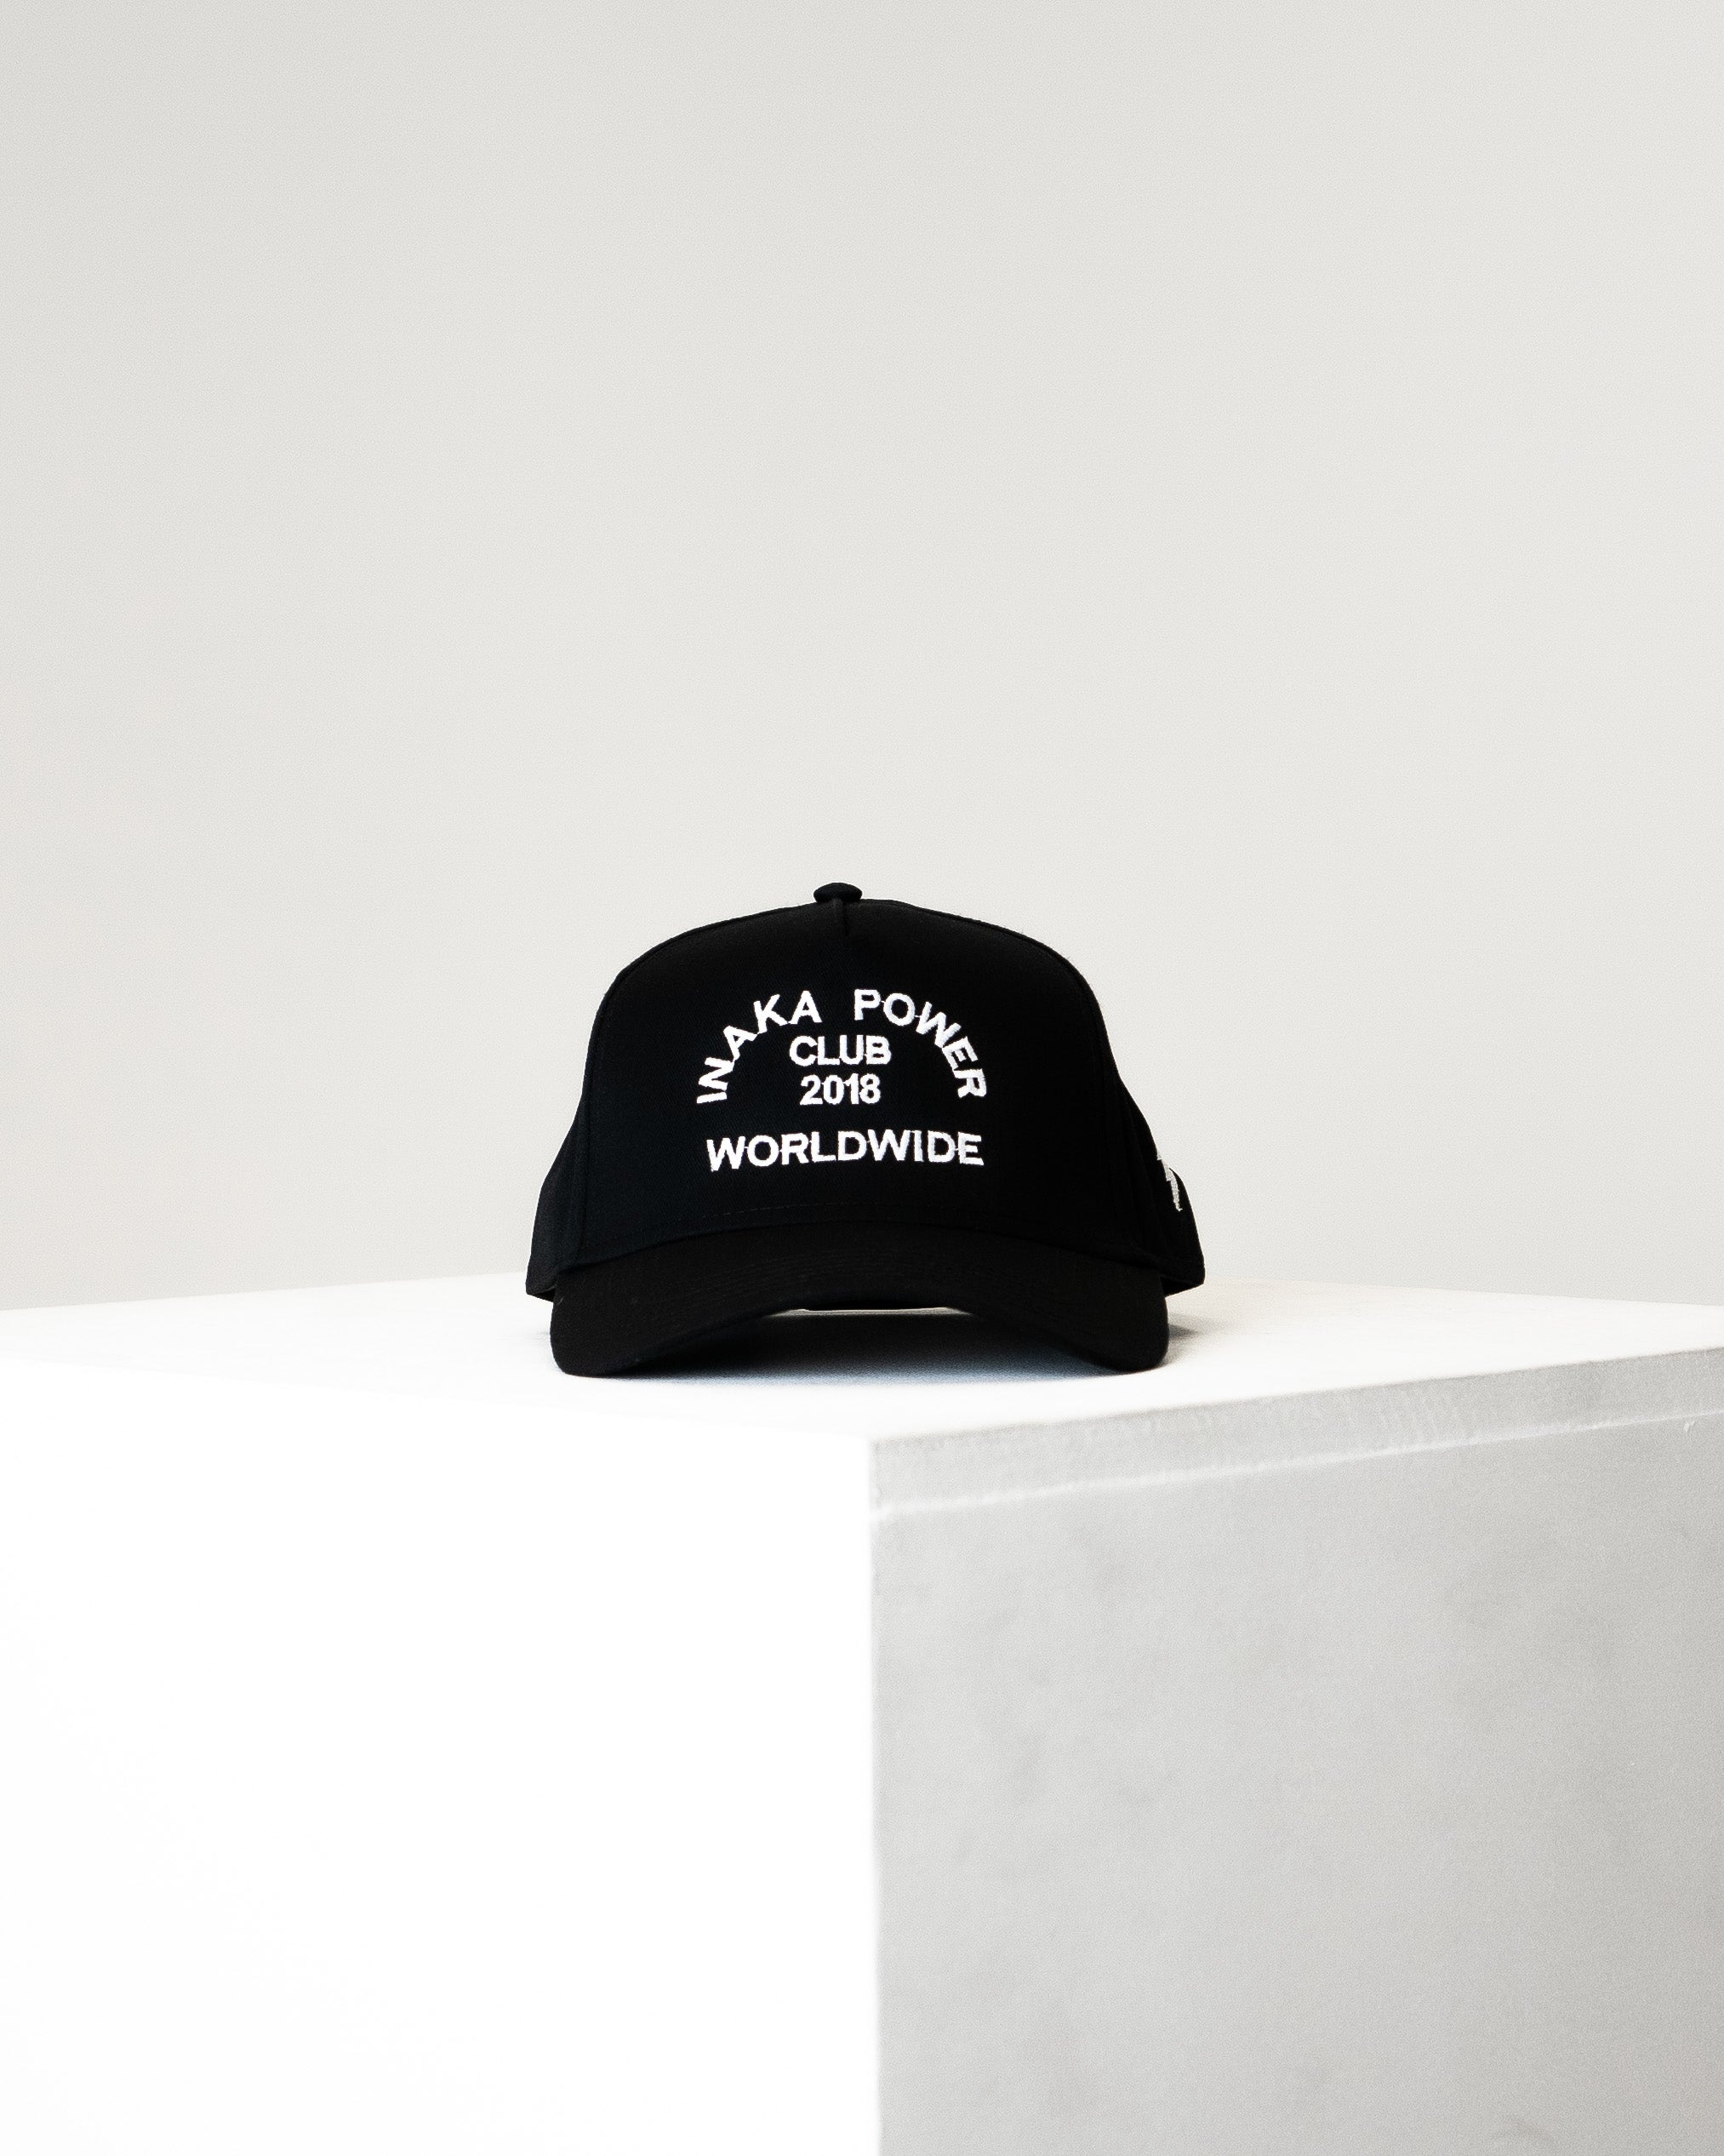 Inaka Worldwide Hat - Black & White